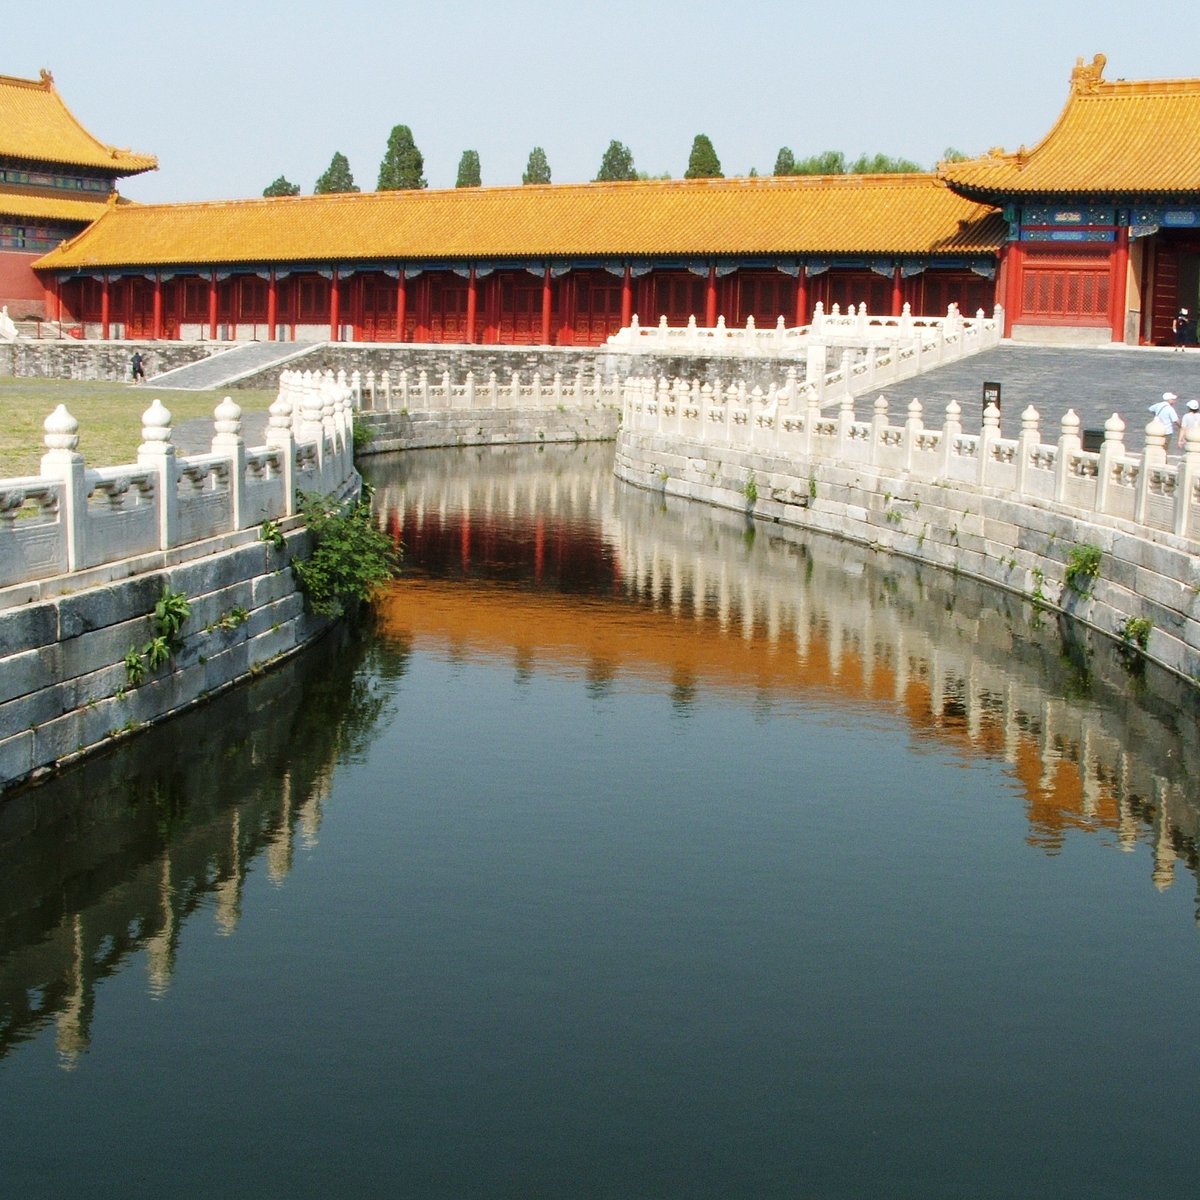 Forbidden City, Forbidden City & Dongcheng Central, Beijing